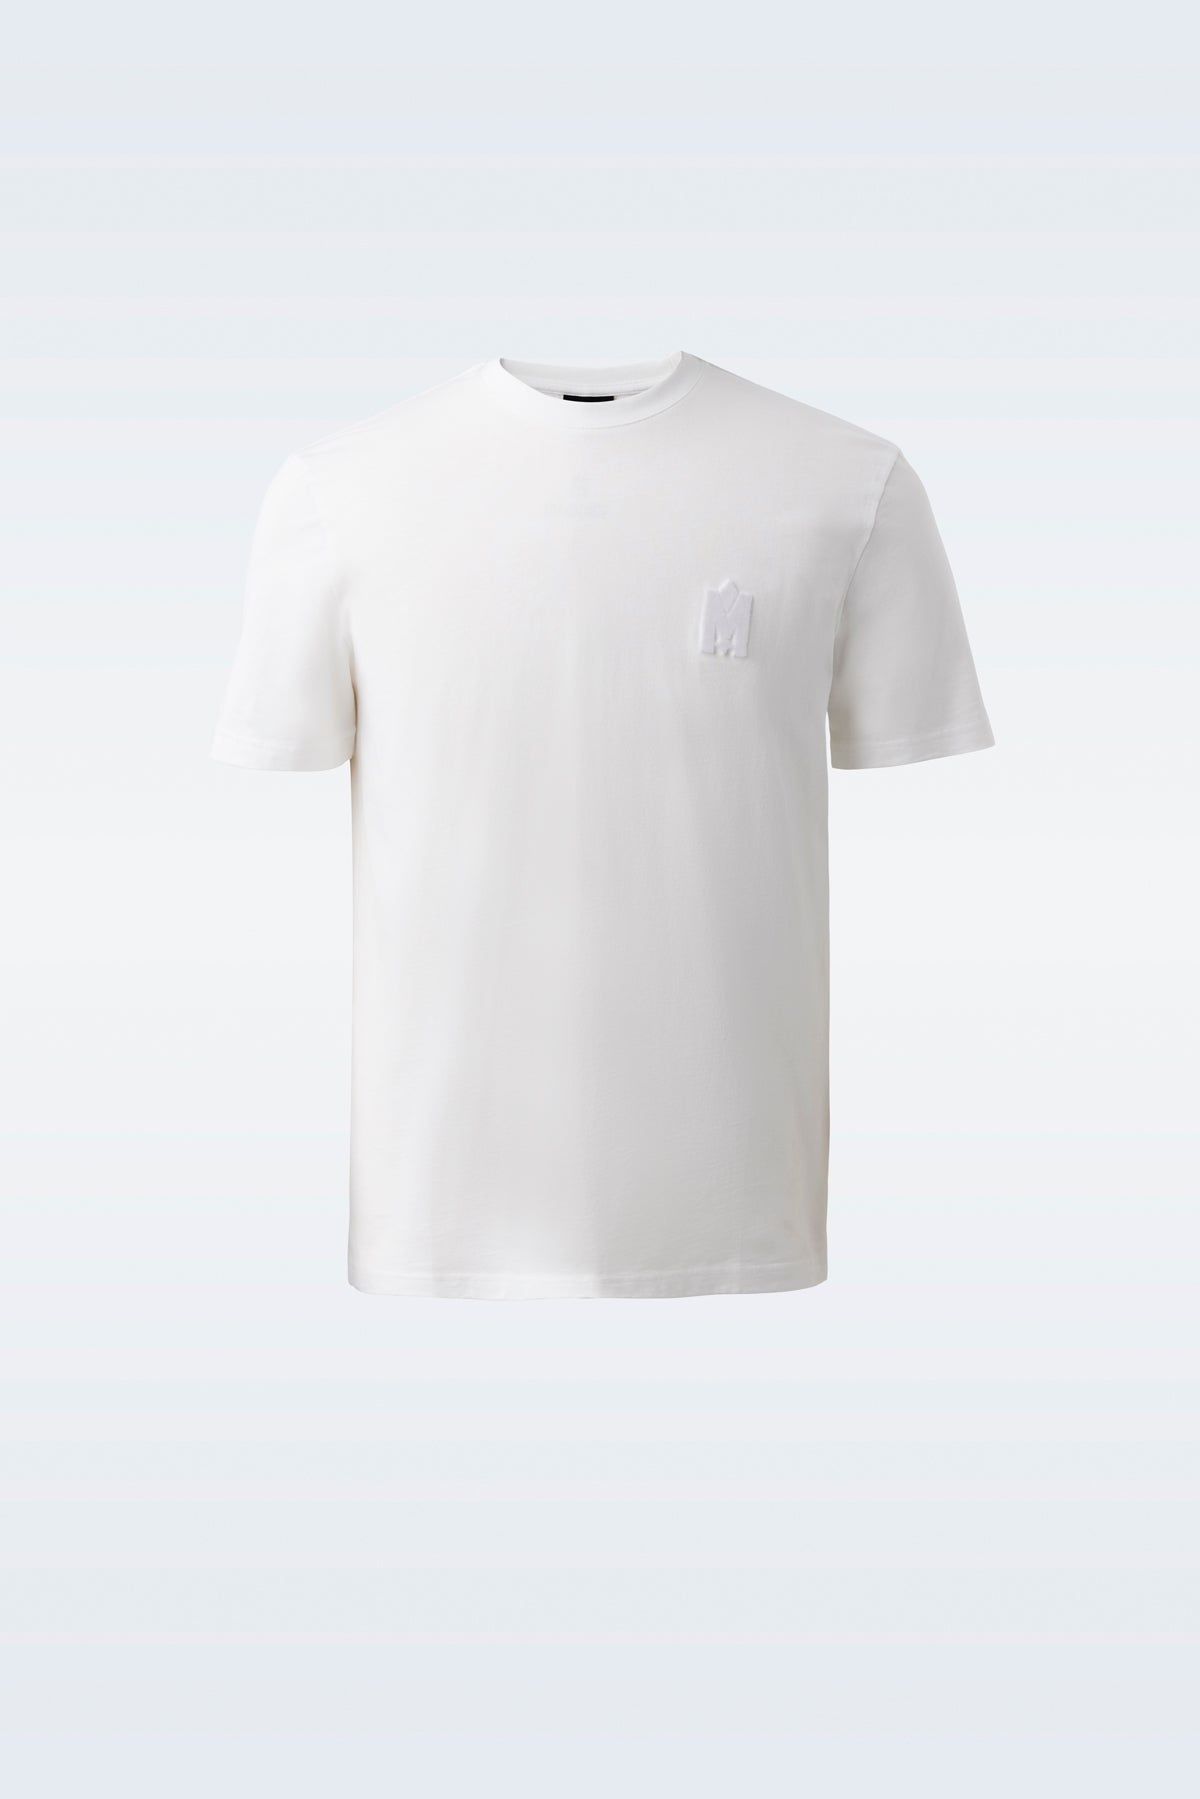 DEV Tee-shirt with velvet logo - 1